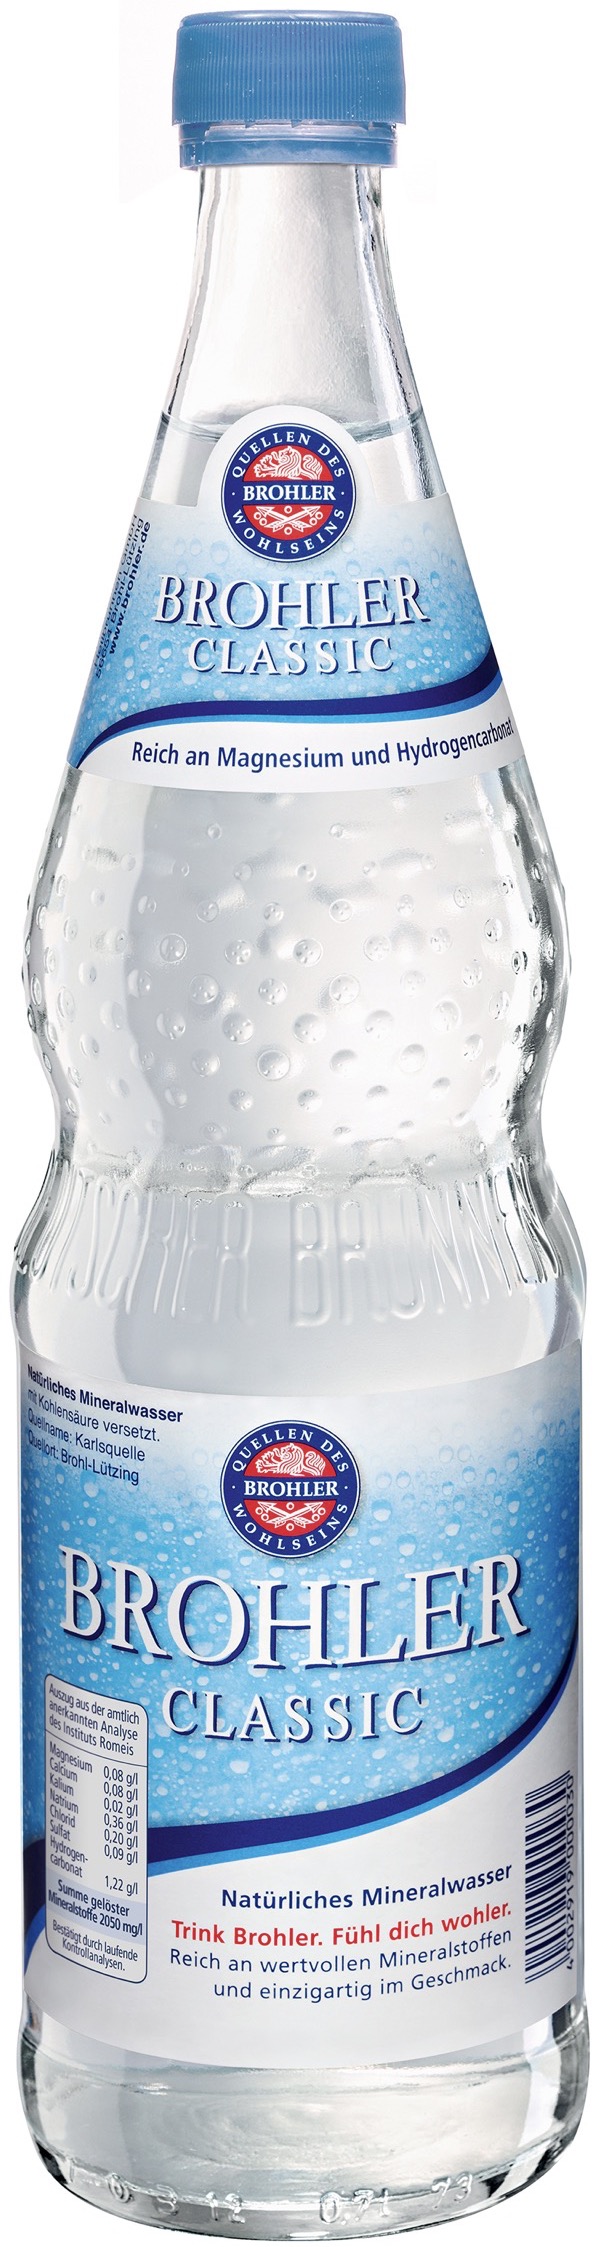 Brohler Mineralwasser  0,7L MEHRWEG